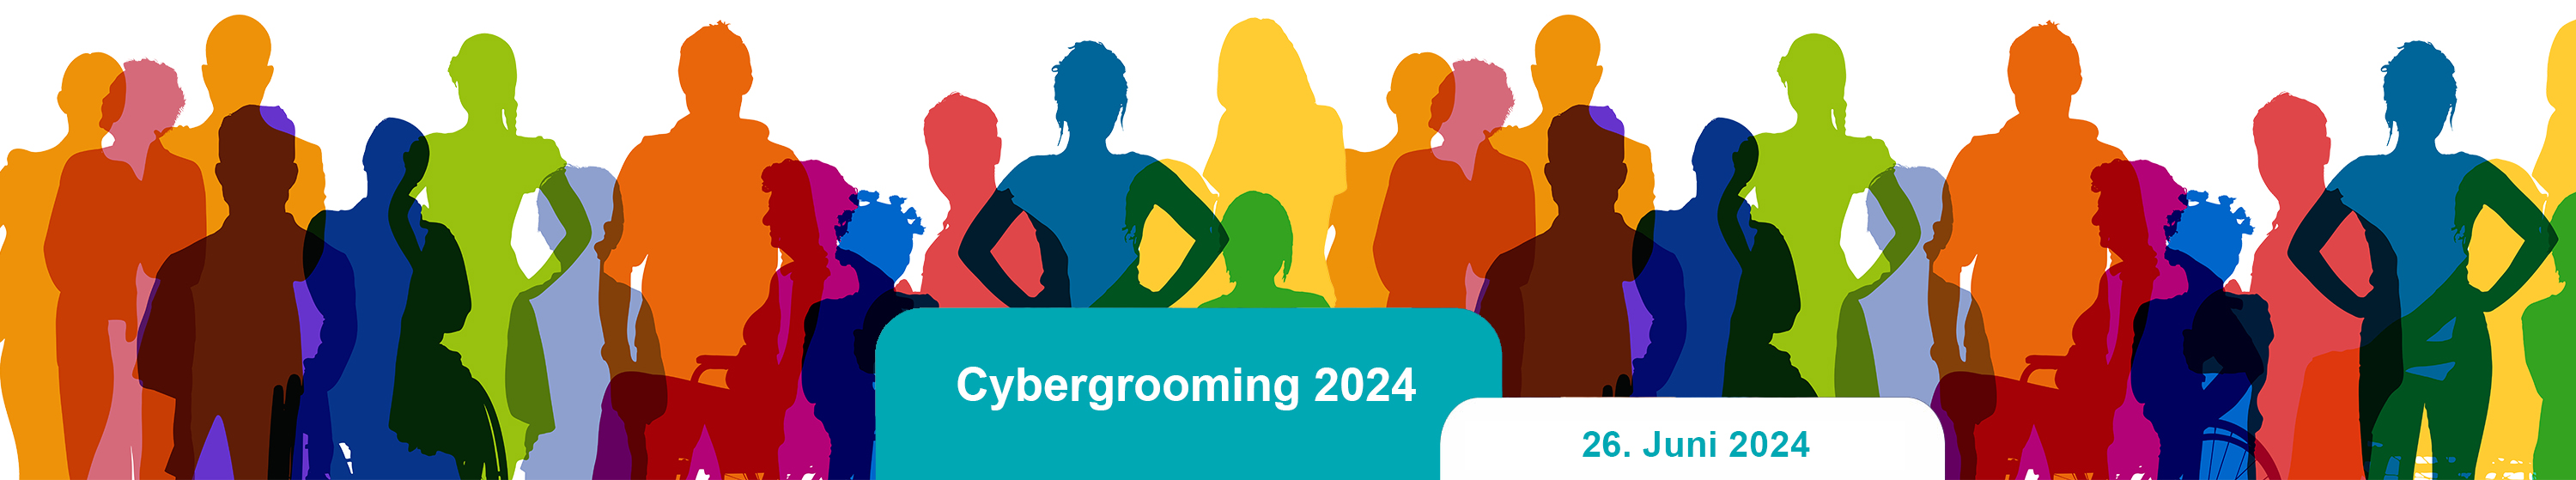 Veranstaltungstitel: Cybergrooming 26. Juni 2024 in einer Grafik mit vielen bunten Personen